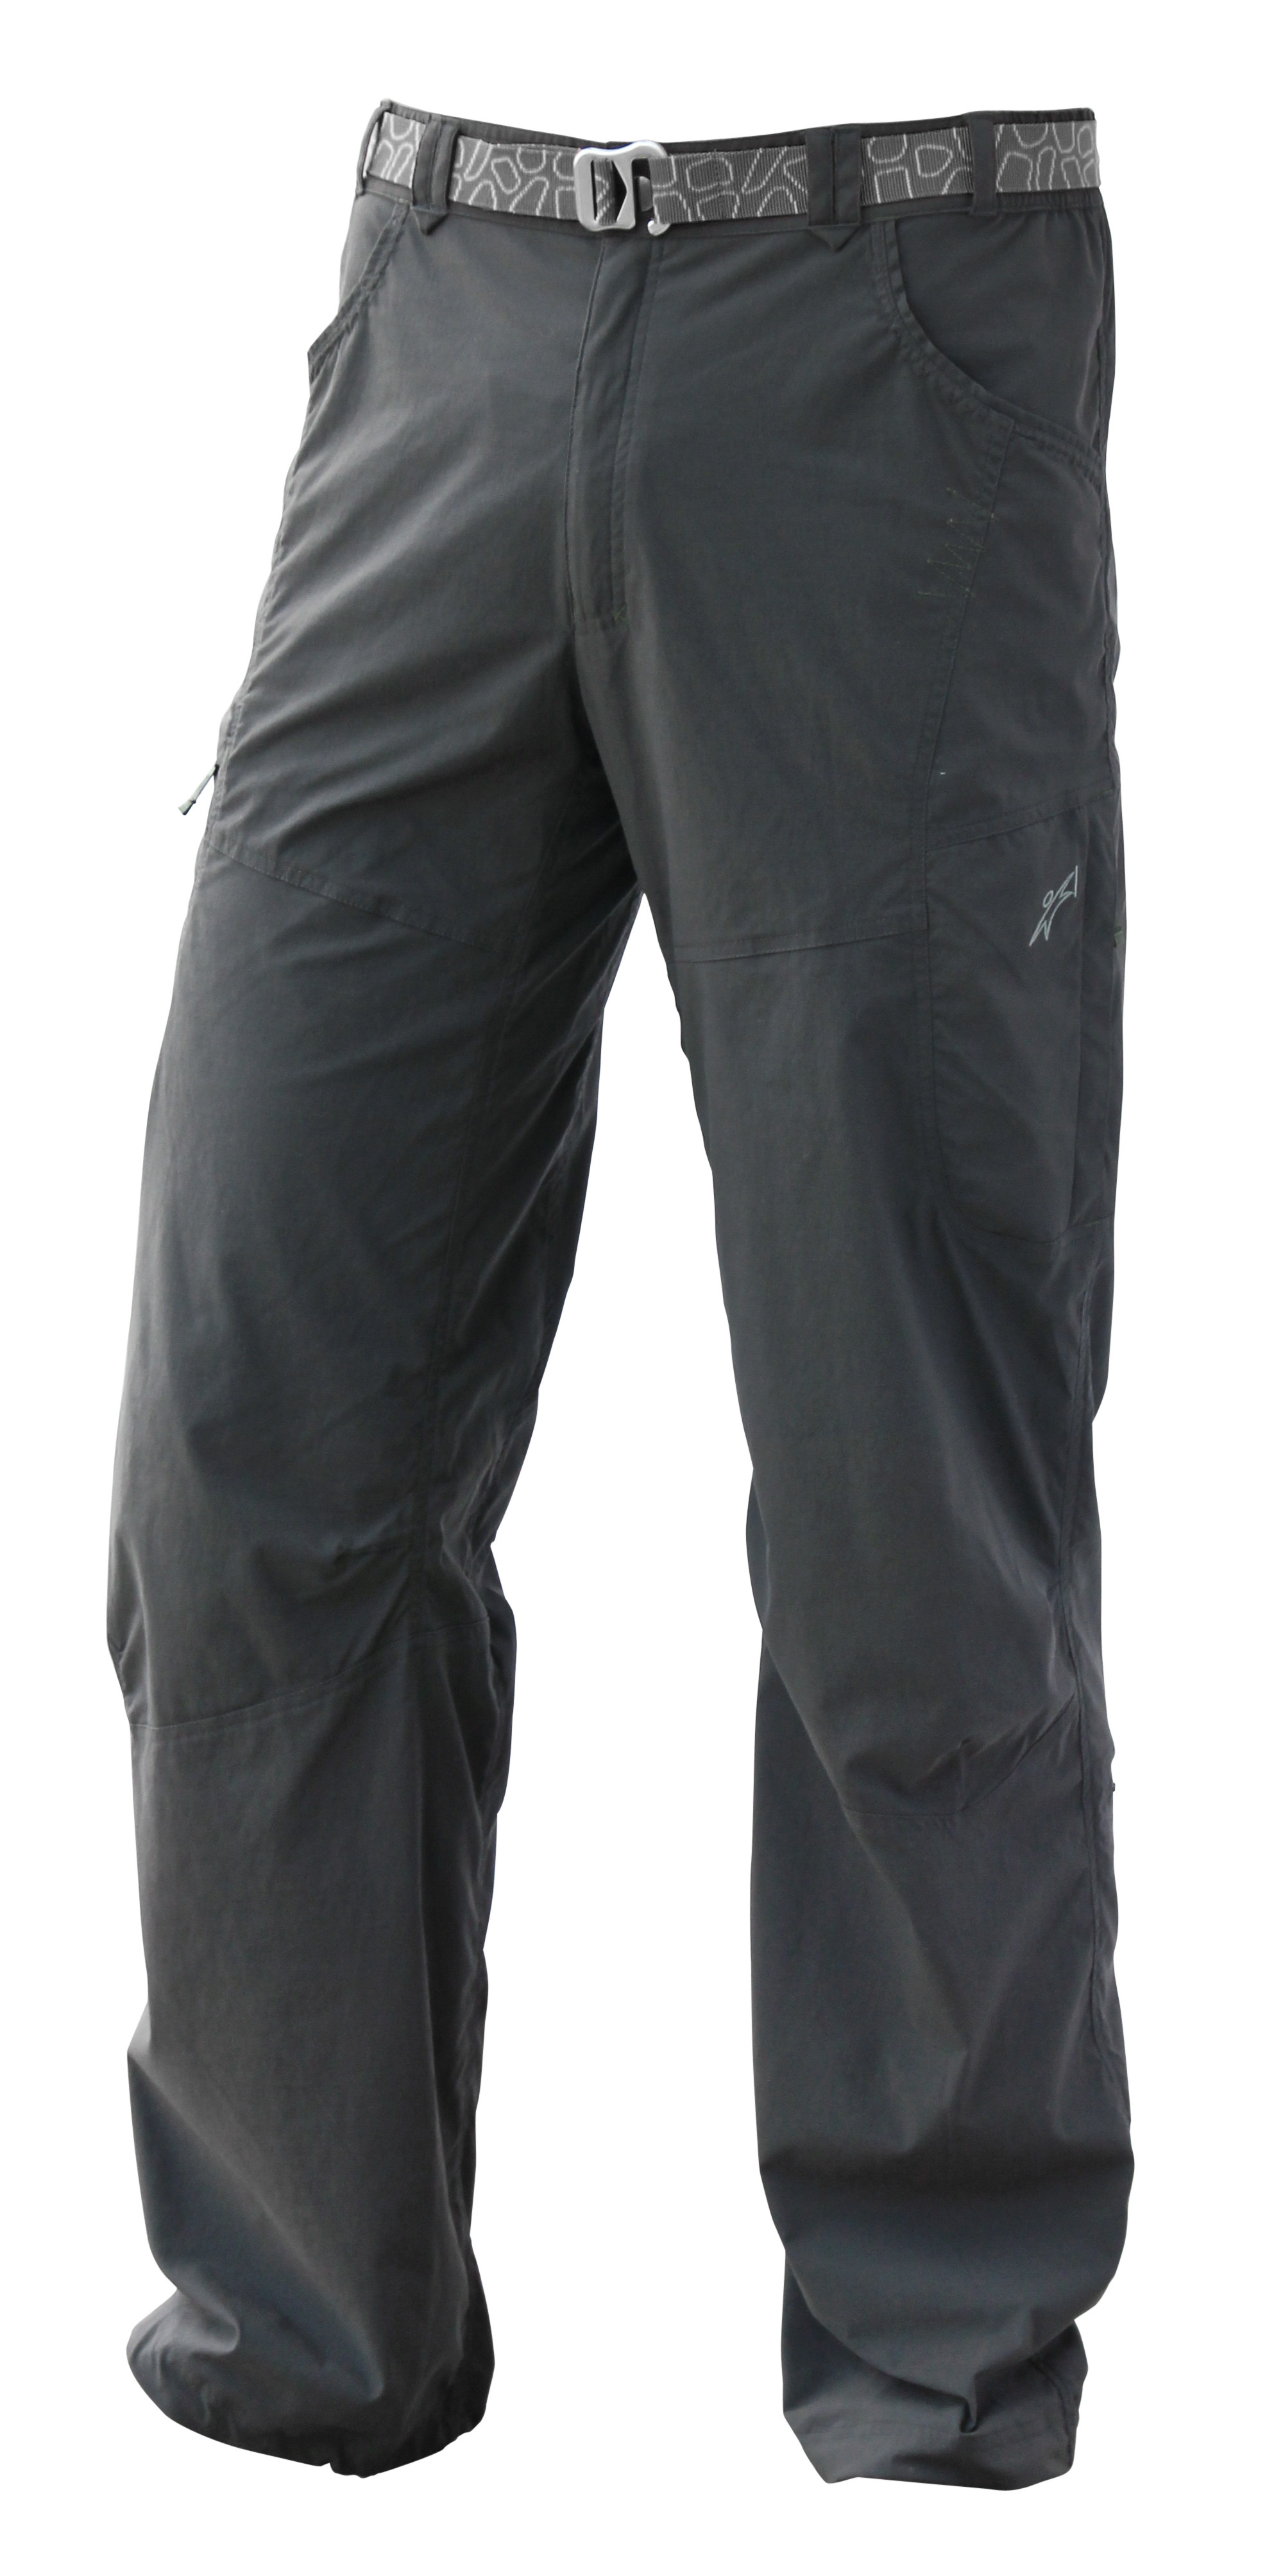 Warmpeace kalhoty Corsar Barva: Iron, Velikost nebo typ: L - zkrácená délka